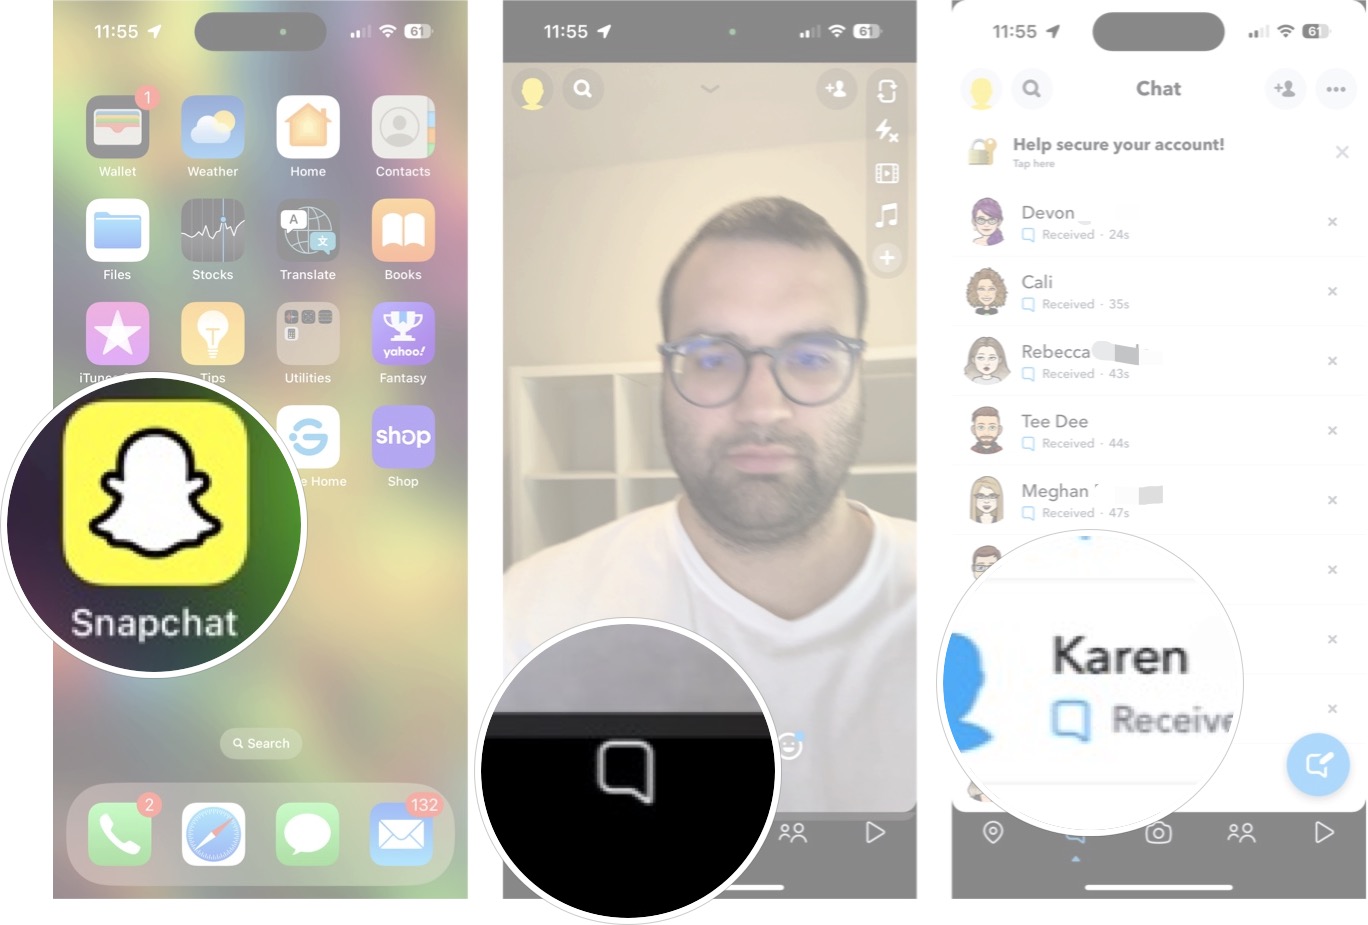 Cara mengubah nama tampilan Snapchat: Luncurkan Snapchat, ketuk percakapan, tab pada teman yang Anda inginkan.